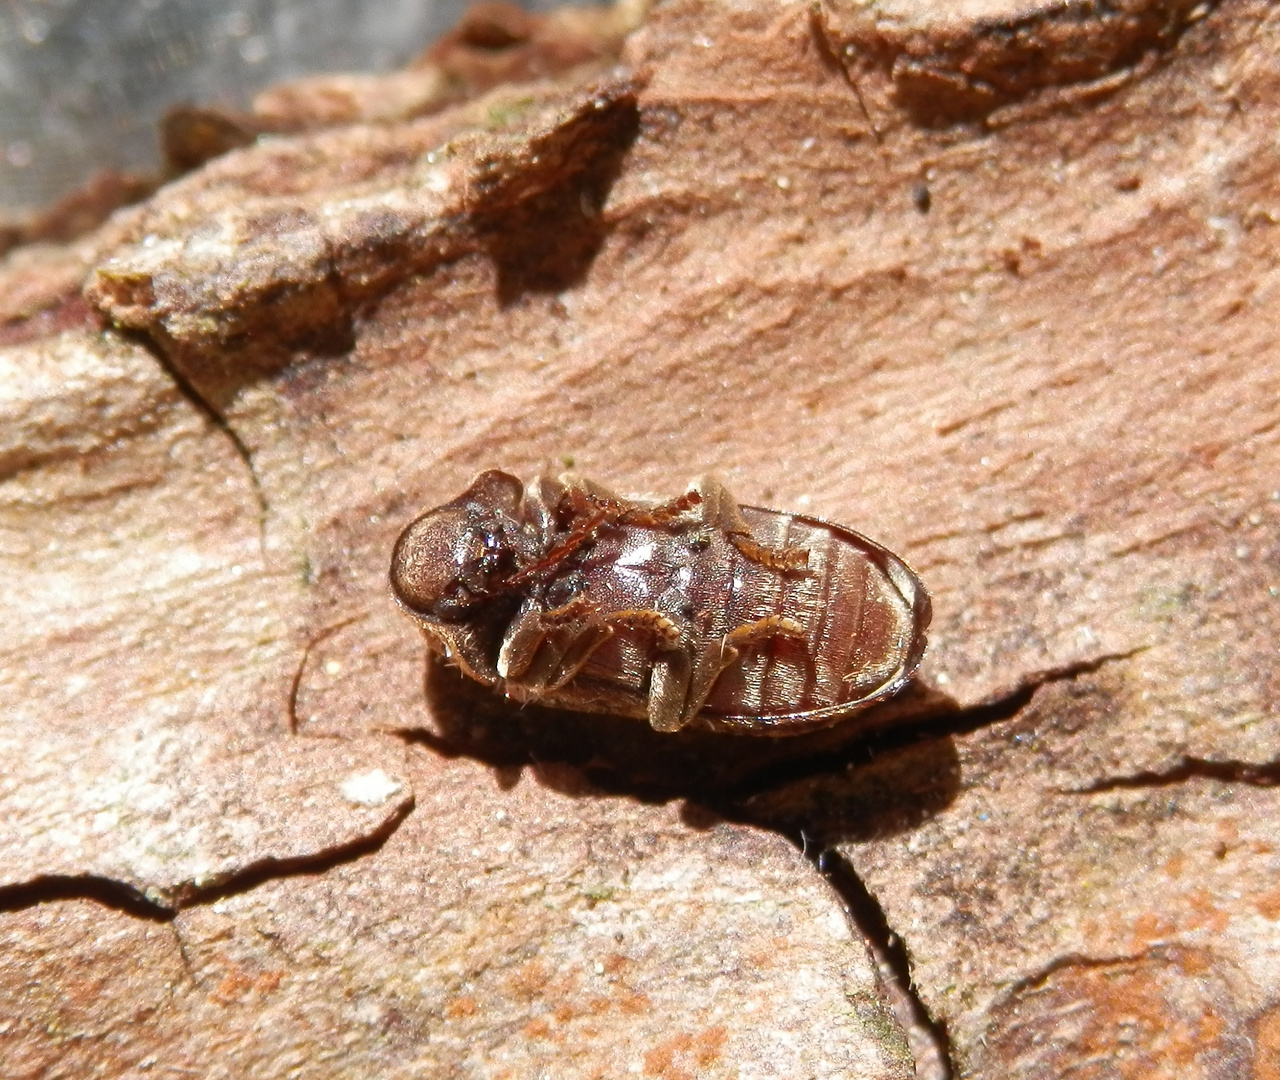 Gescheckter Nagekäfer (Xestobium rufovillosum) - ein Holzschädling